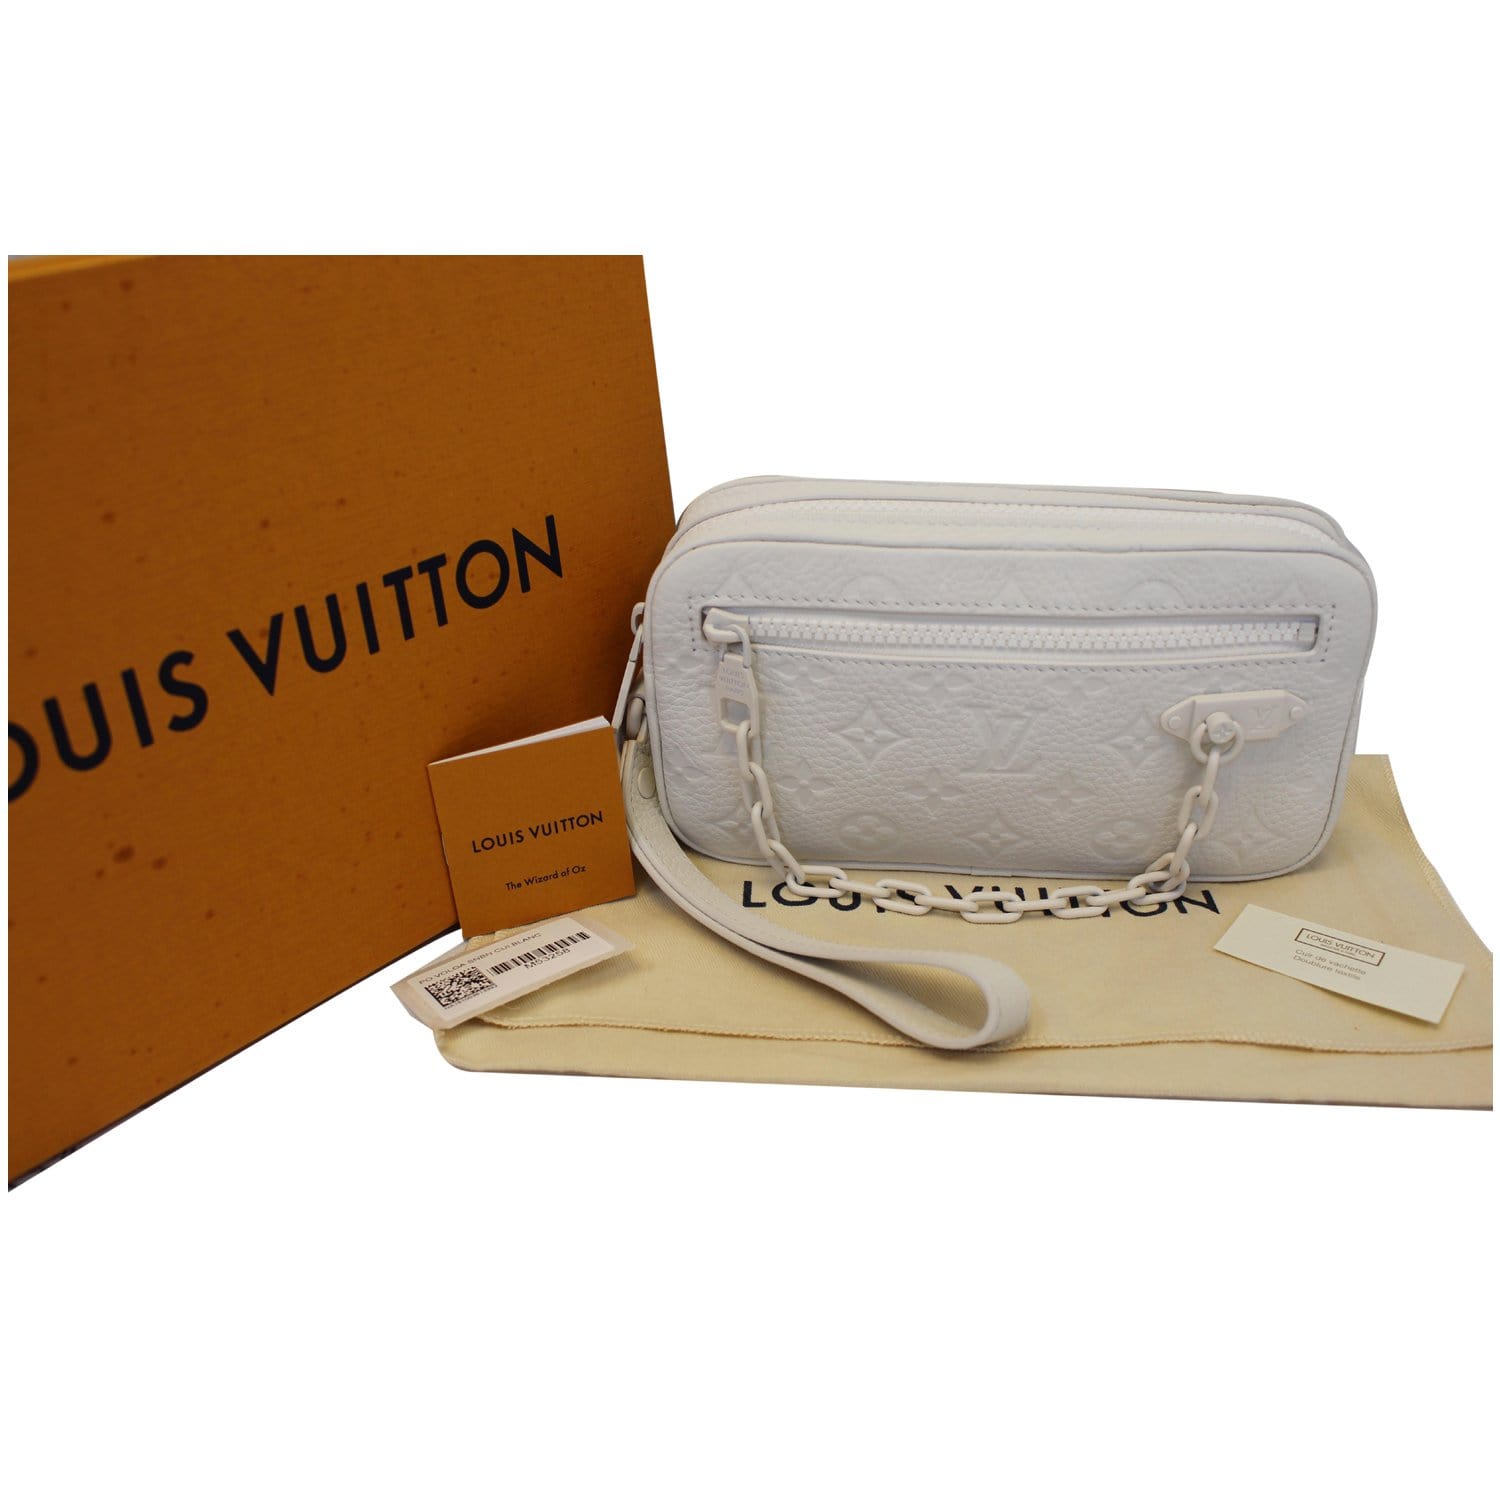 Louis Vuitton Pochette Volga Monogram White in Taurillon Leather with  Tone-on-Tone - US